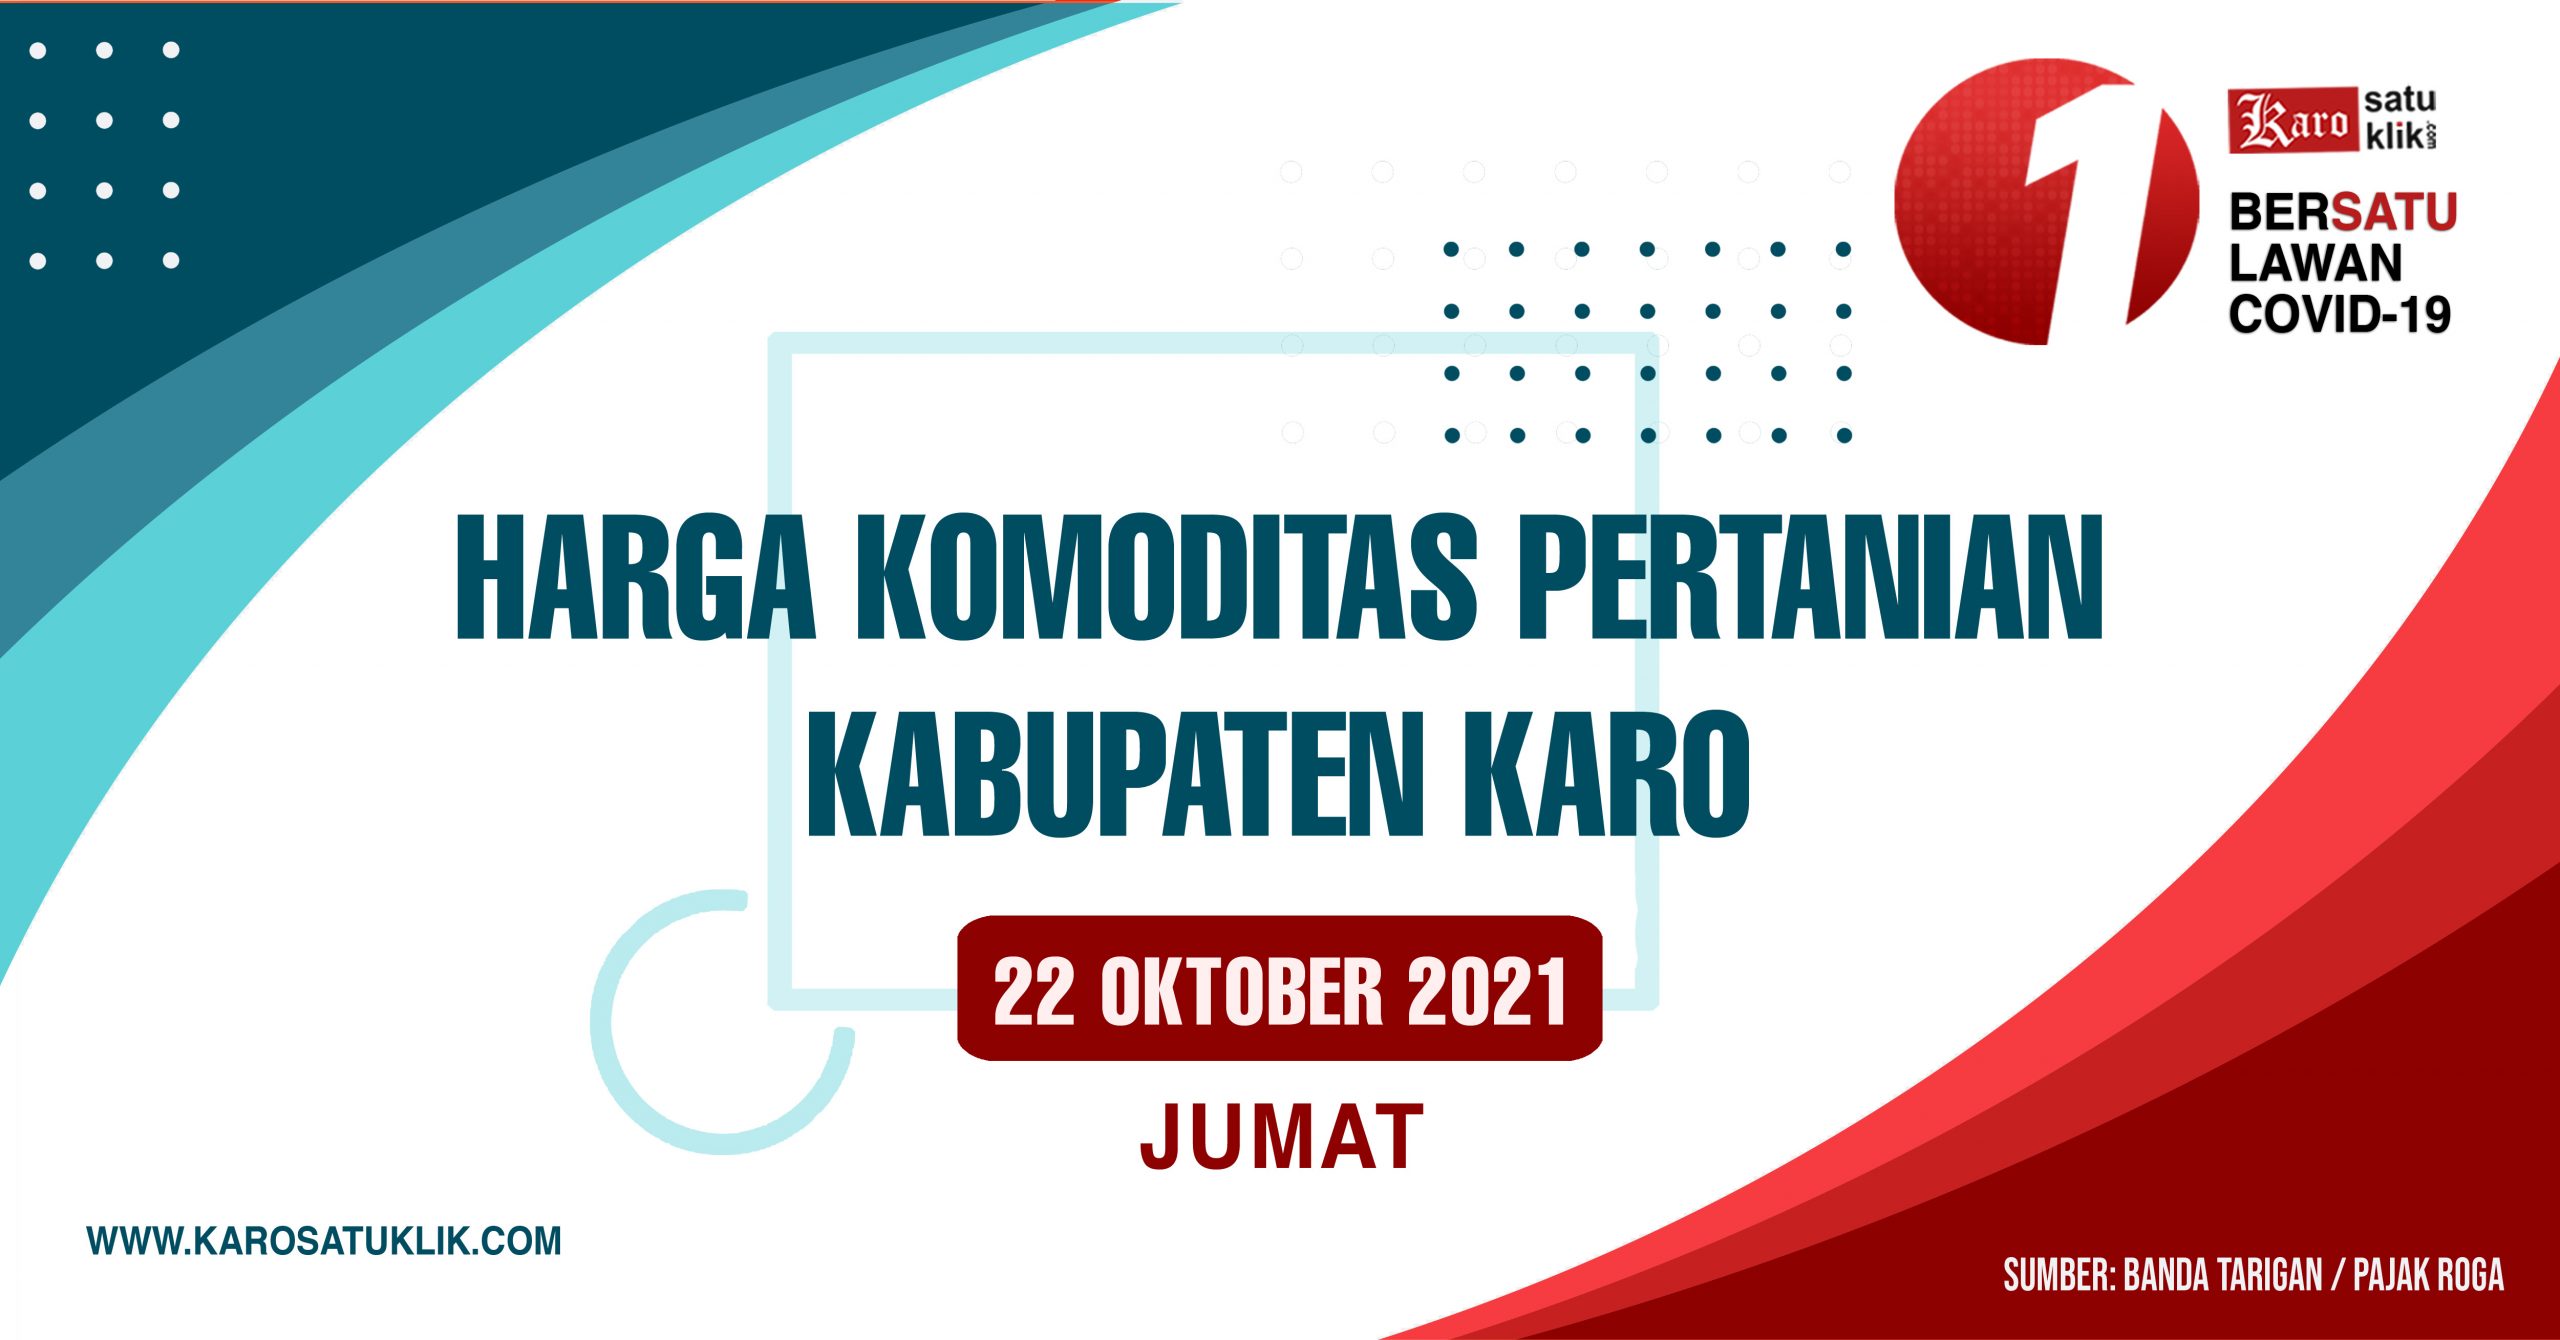 Daftar Harga Komoditas Pertanian Kabupaten Karo, 22 Oktober 2021